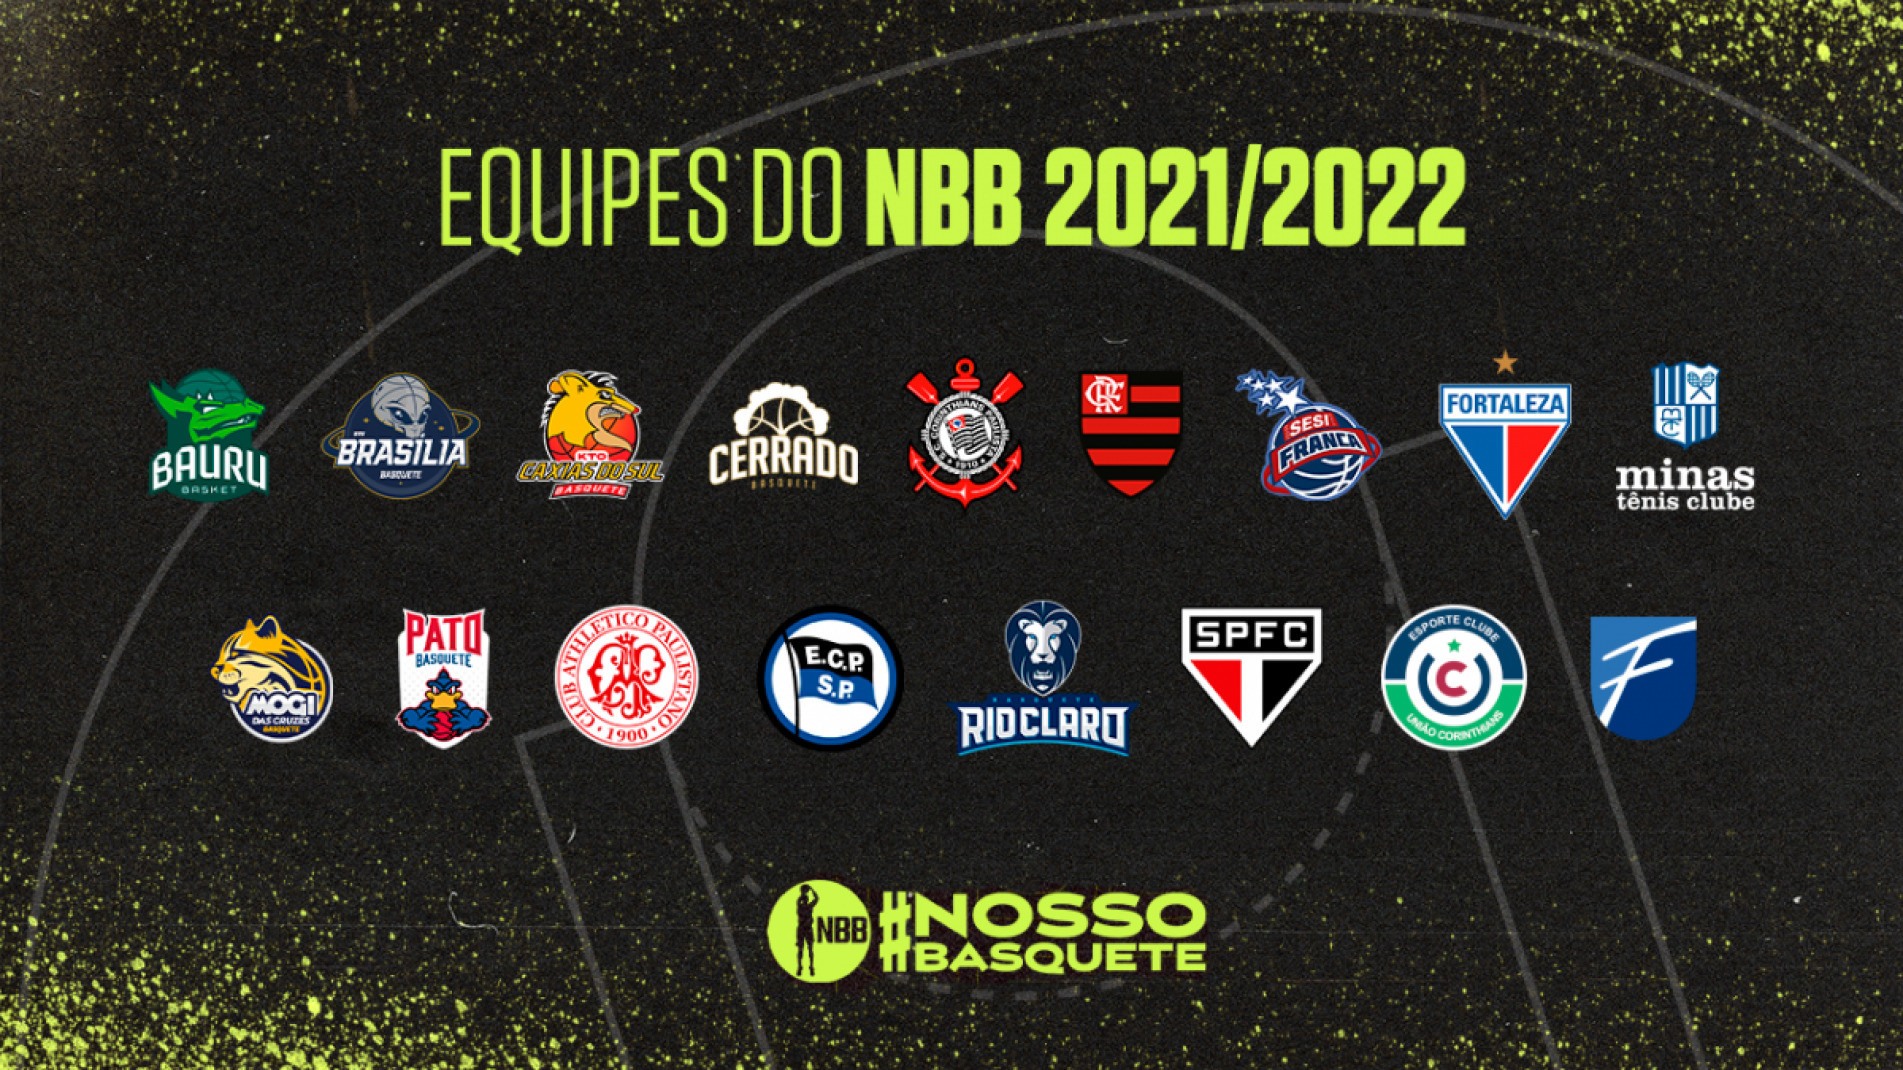 Com o retorno de Rio Claro e a adição do União Corinthians (RS), a competição contará com 17 times na temporada 2021/2022